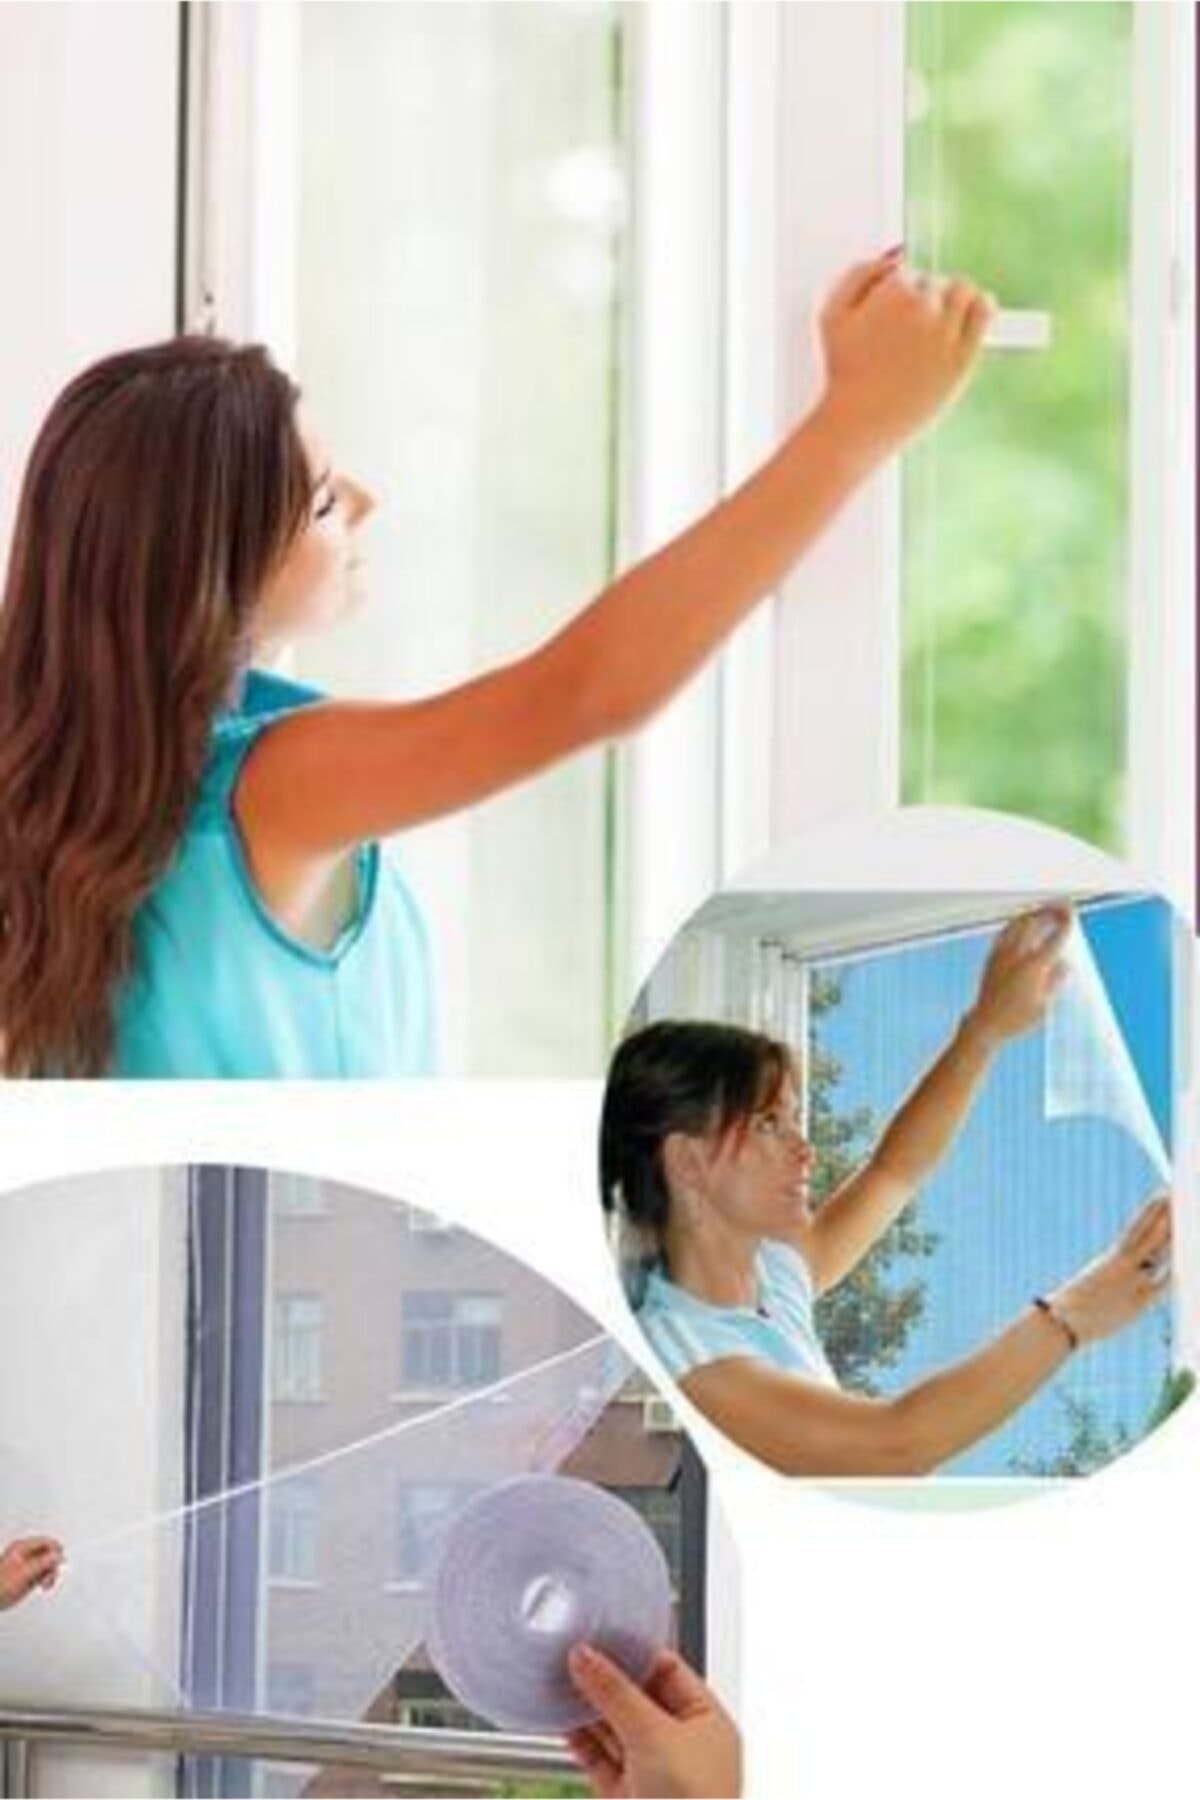 Kesilebilir Pencere Sinekliği Cırt Bantlı Yapışkanlı 100cm X 150cm